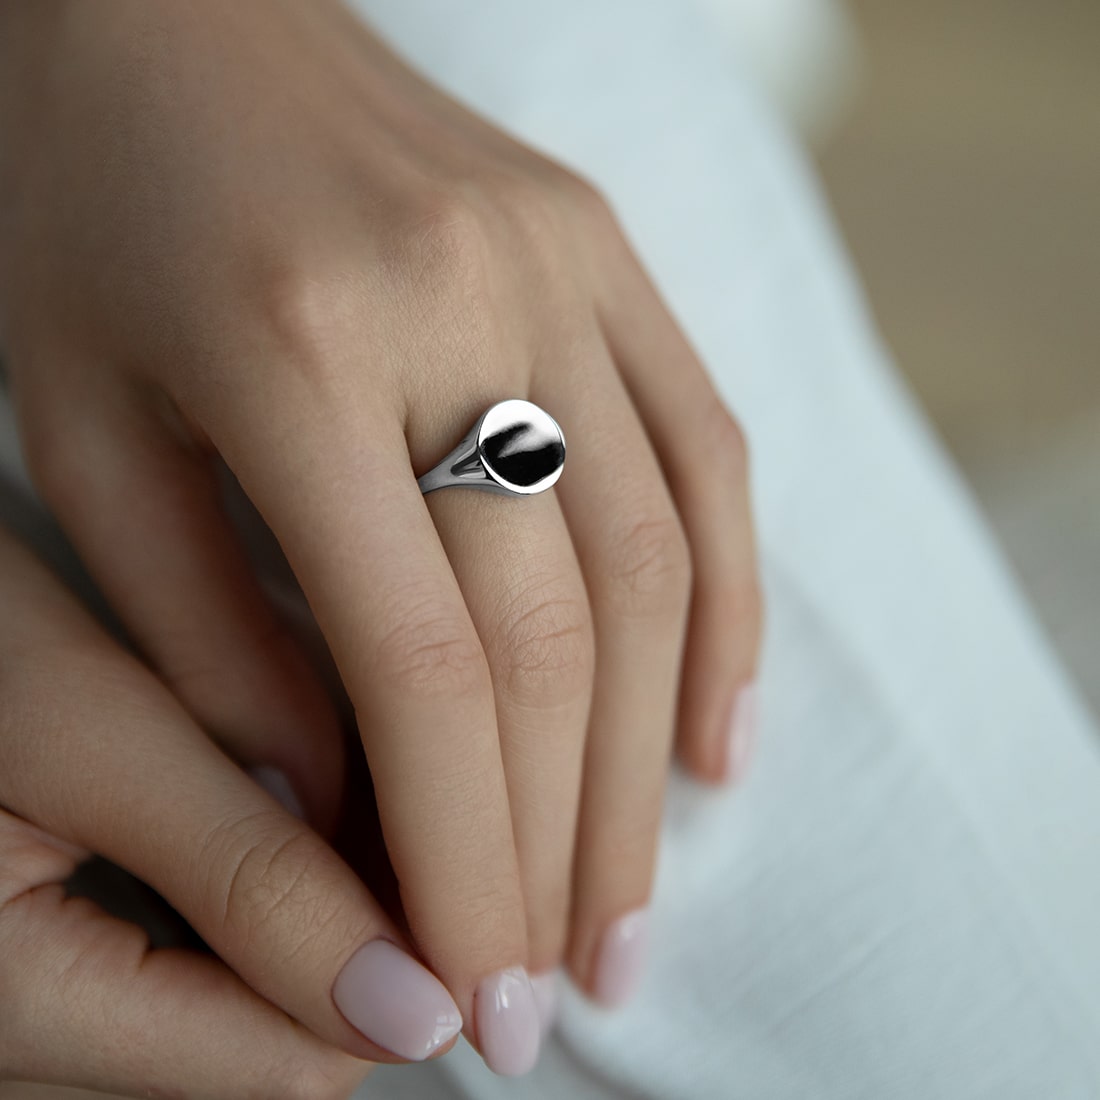 Кольца: Кольцо-печатка Большой круг можно купить в ювелирном гардеробе MOMNT (Momentsilver), интернет-магазине украшений из серебра. Серебро 925, родий. Артикул 